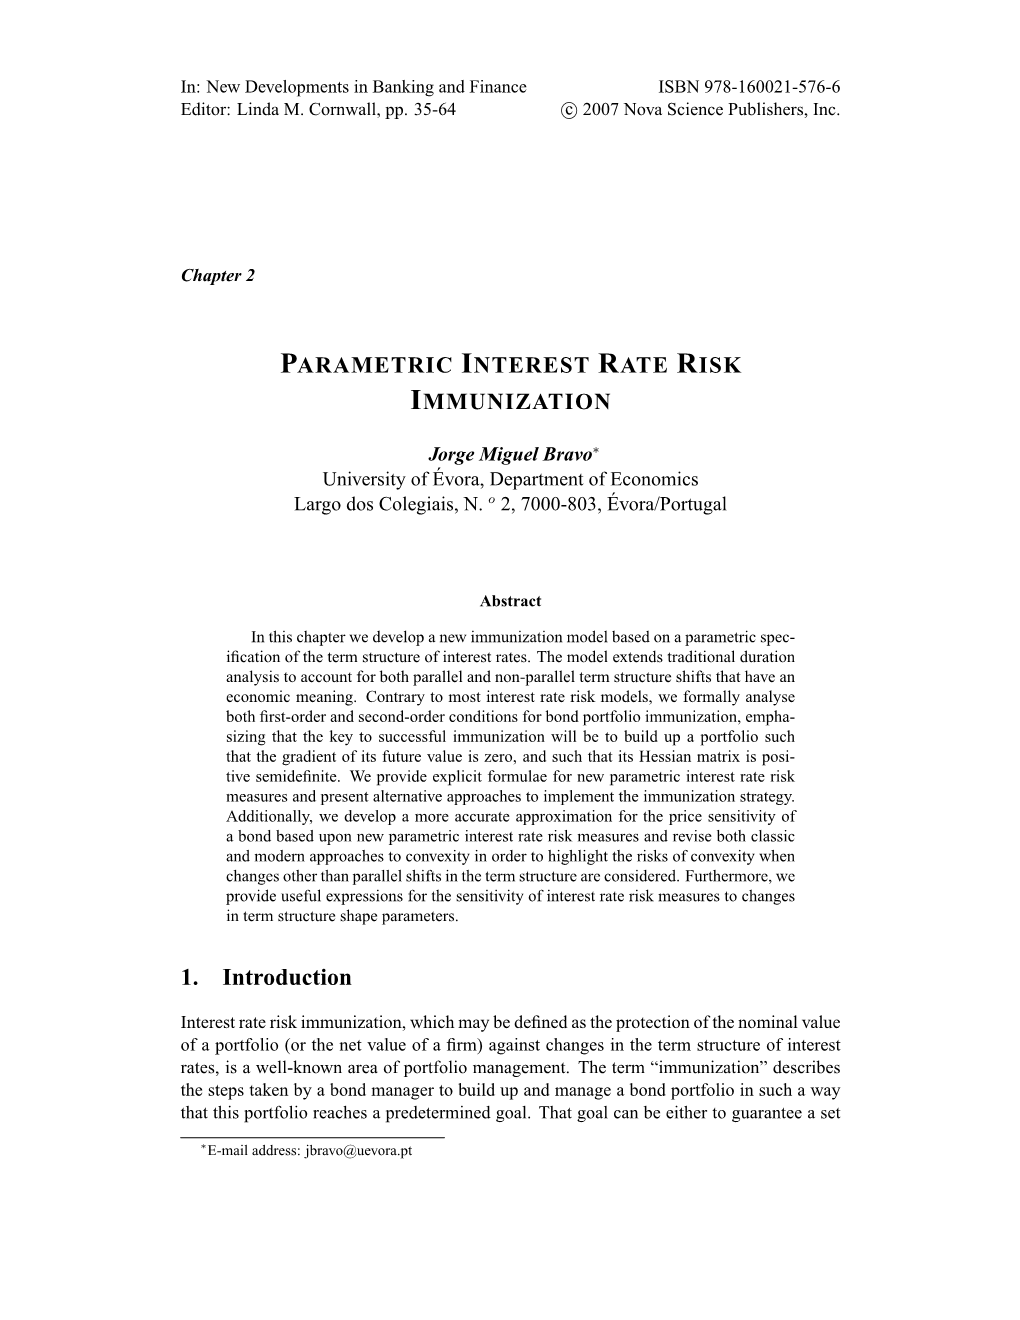 Parametric Interest Rate Risk Immunization